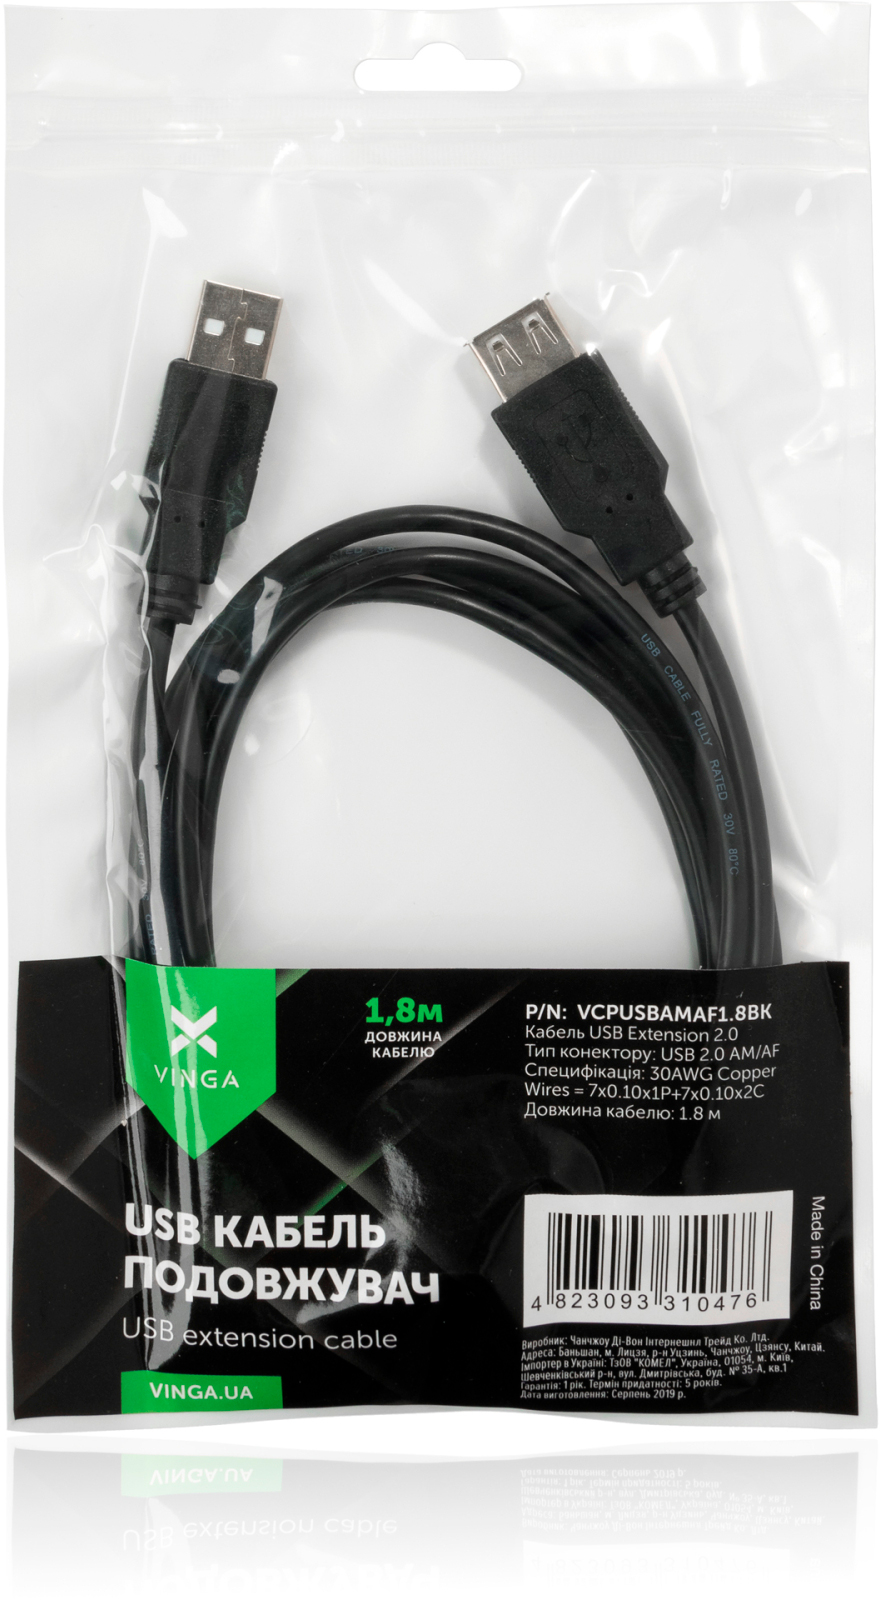 продаём Vinga USB 2.0 AM/AF 1.8m (VCPUSBAMAF1.8BK) в Украине - фото 4